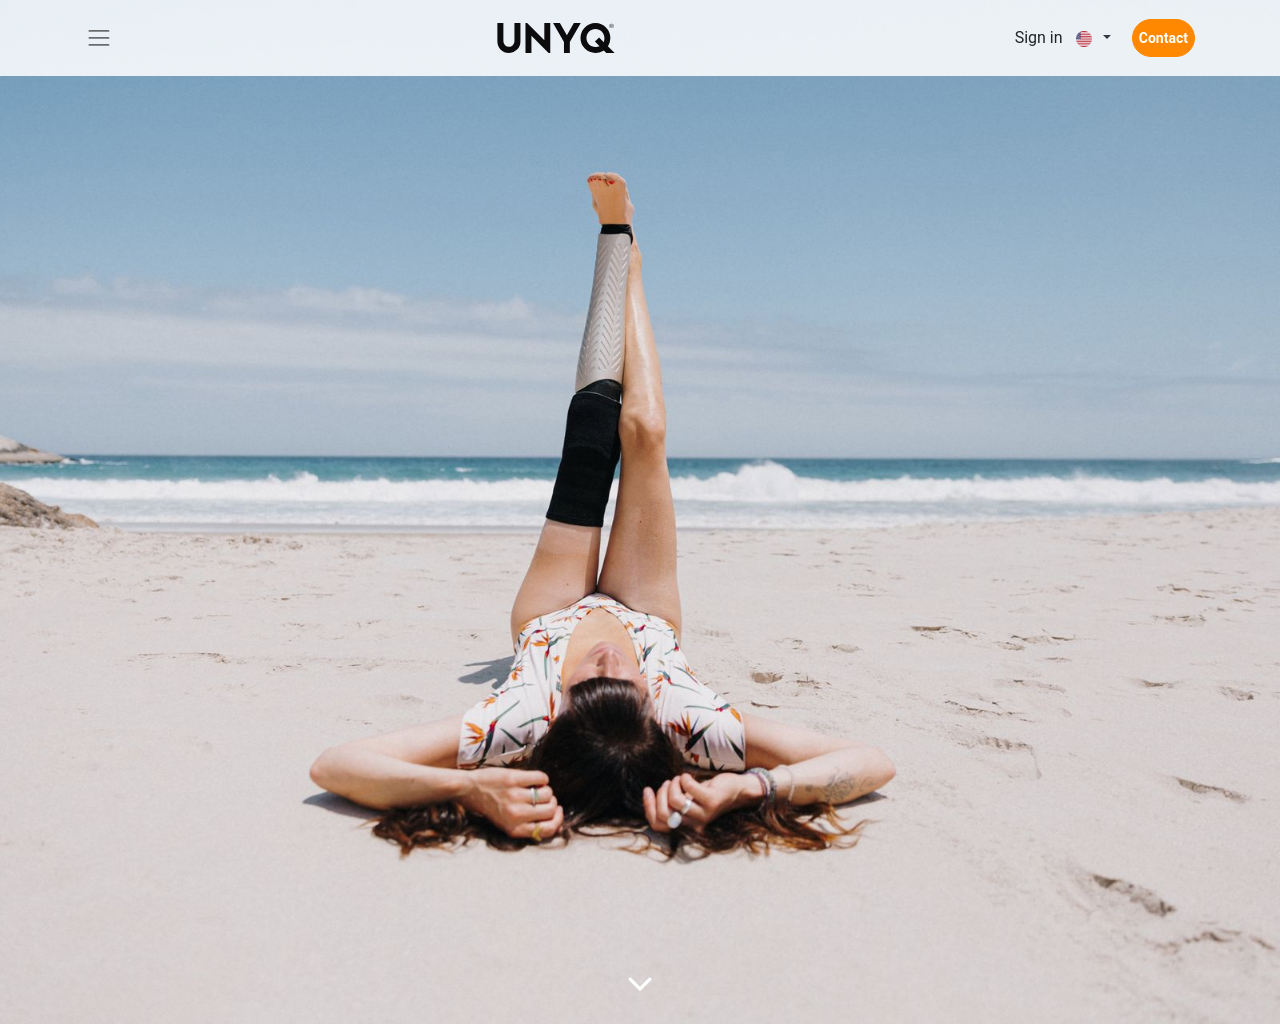 unyq.com